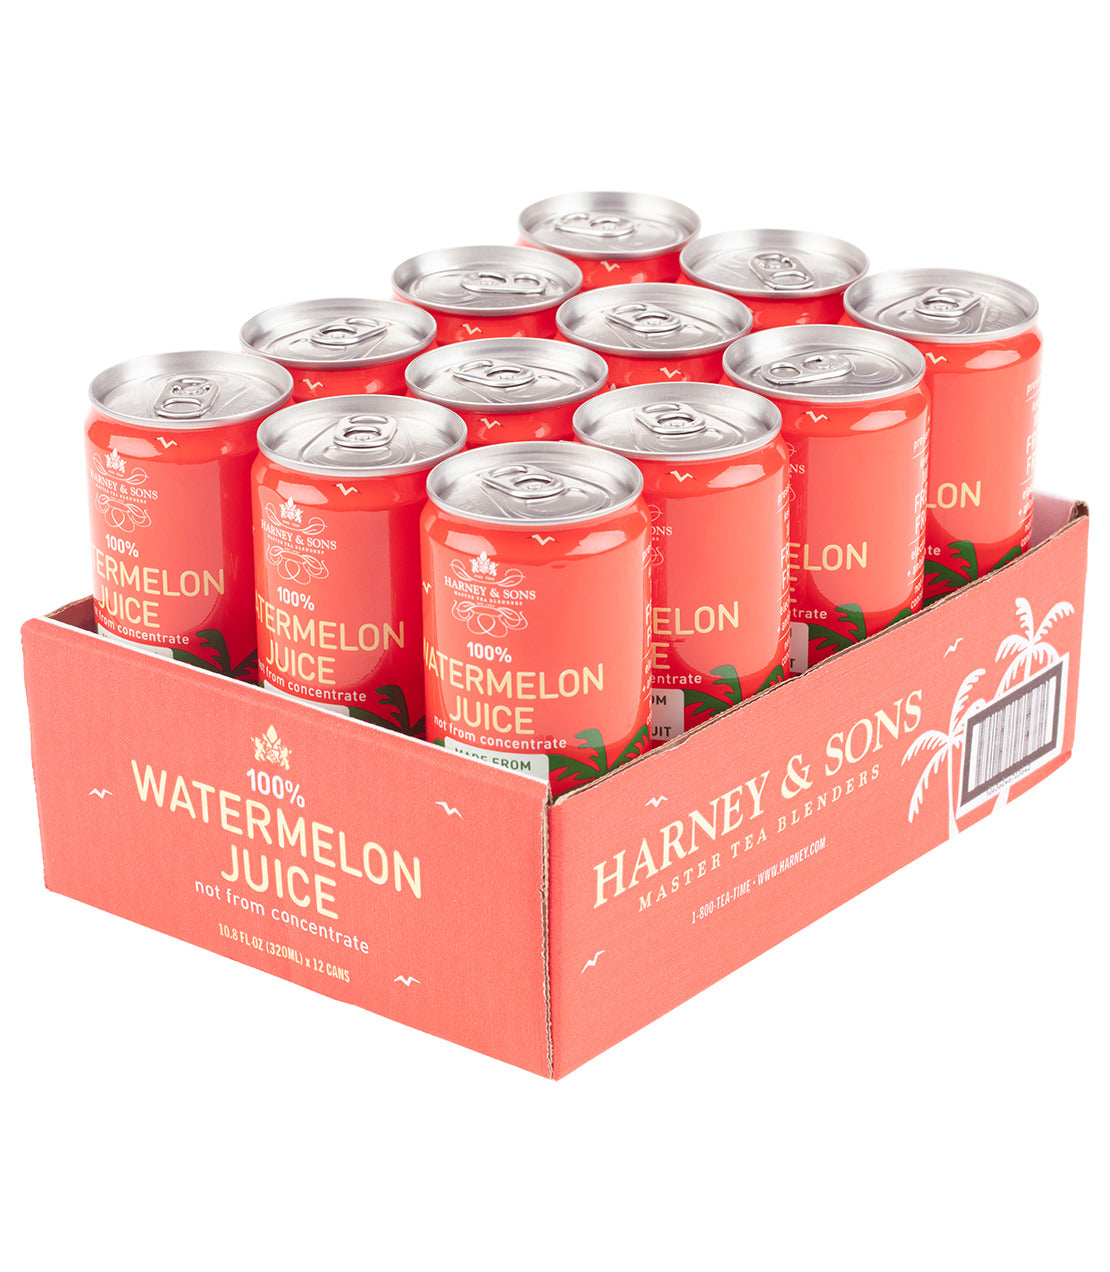 Harney & Sons Watermelon Juice